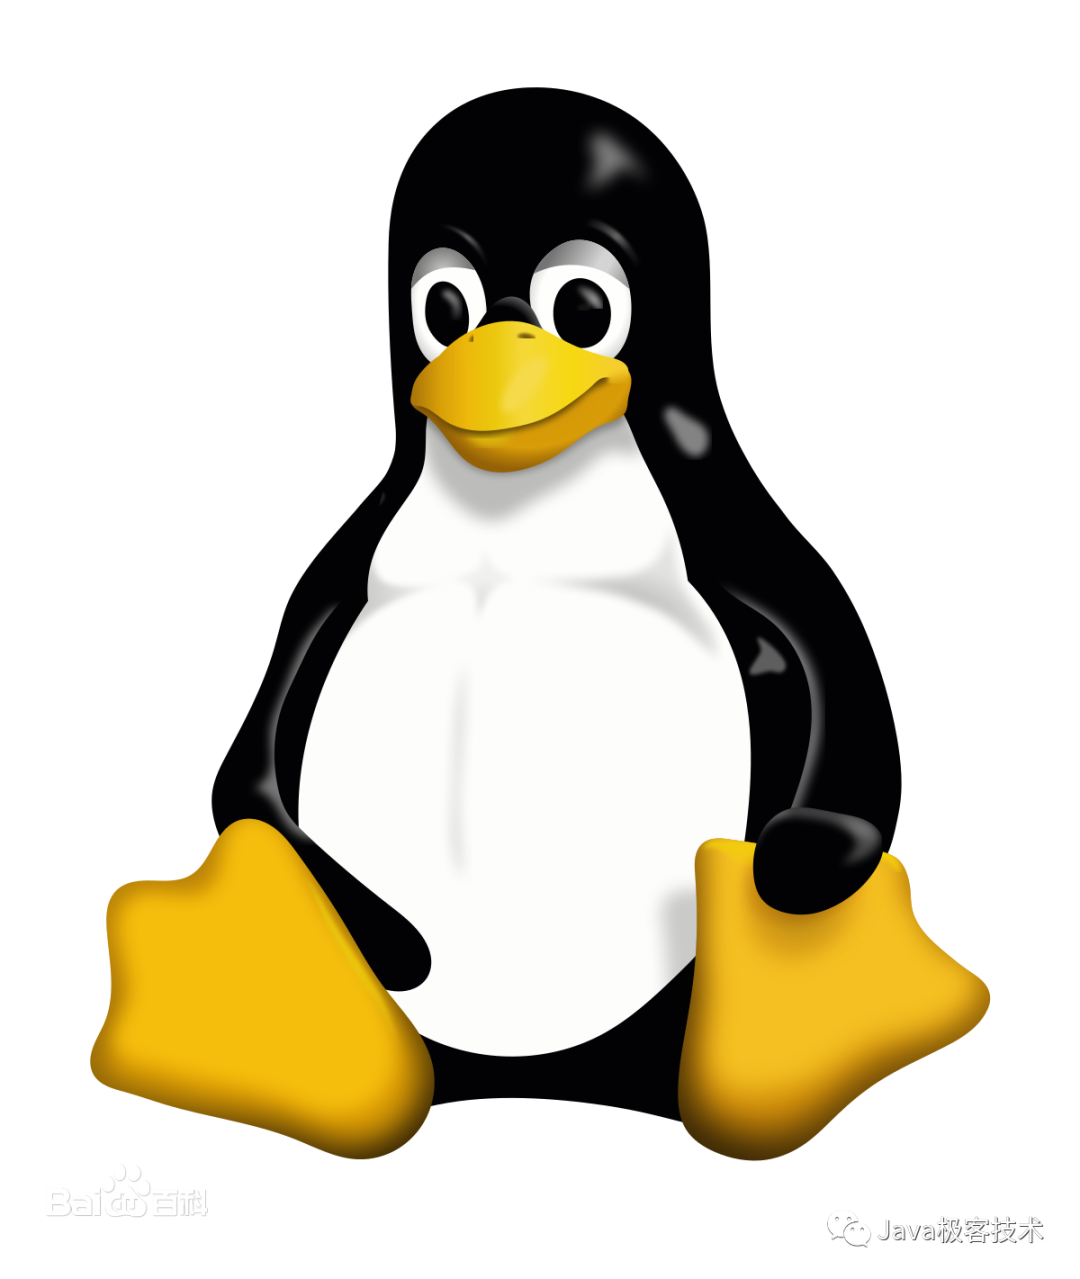 优化了一波Linux性能，面试官让我出门左拐-开源基础软件社区